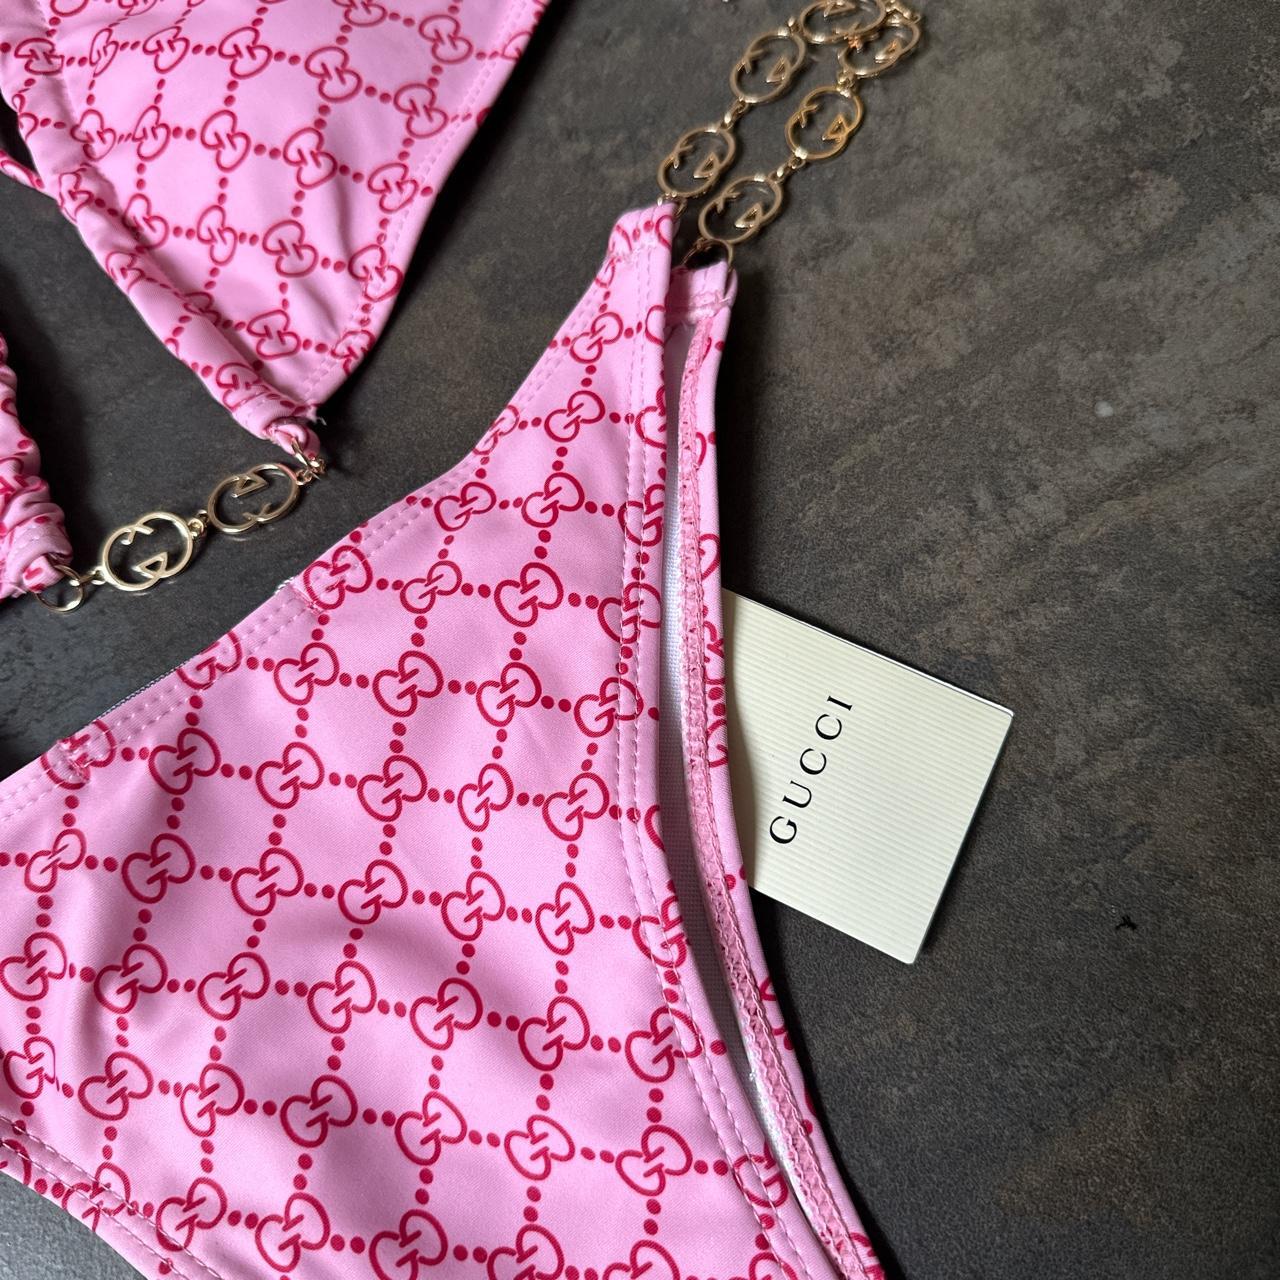 Pink Gucci Bikini 👙 Custom Designs... - Depop